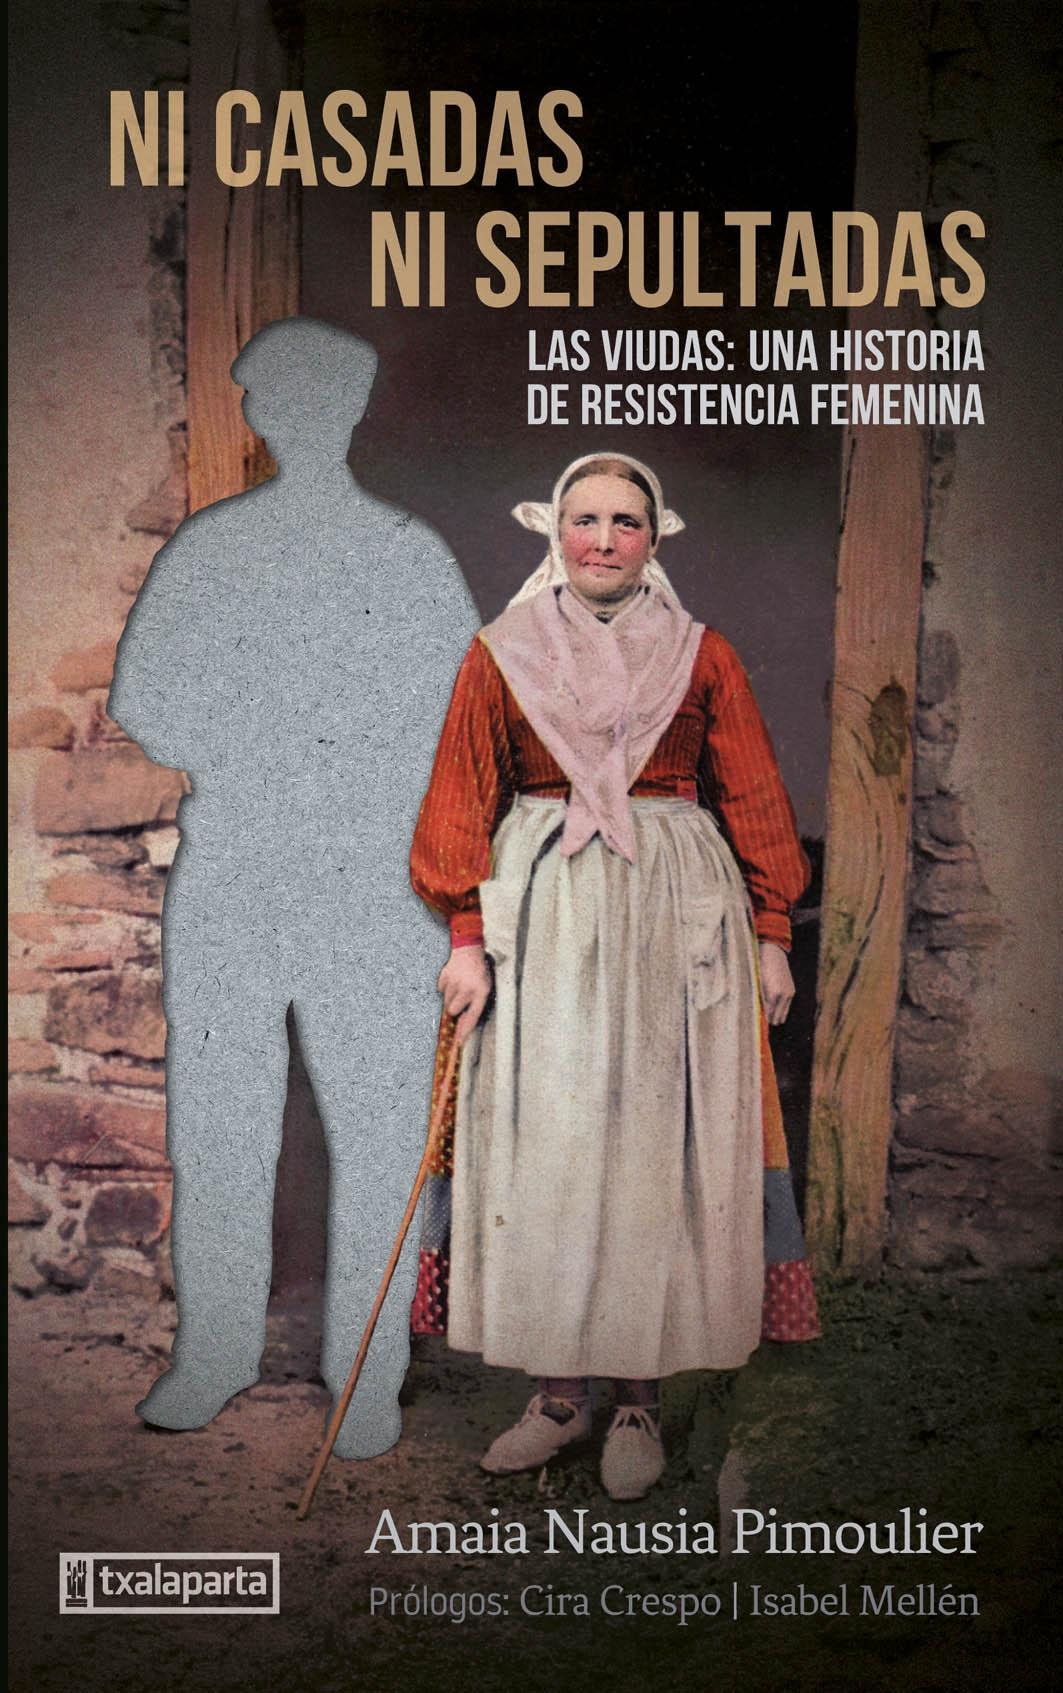 NI CASADAS NI SEPULTADAS "LAS VIUDAS : UNA HISTORIA DE RESISTENCIA". 